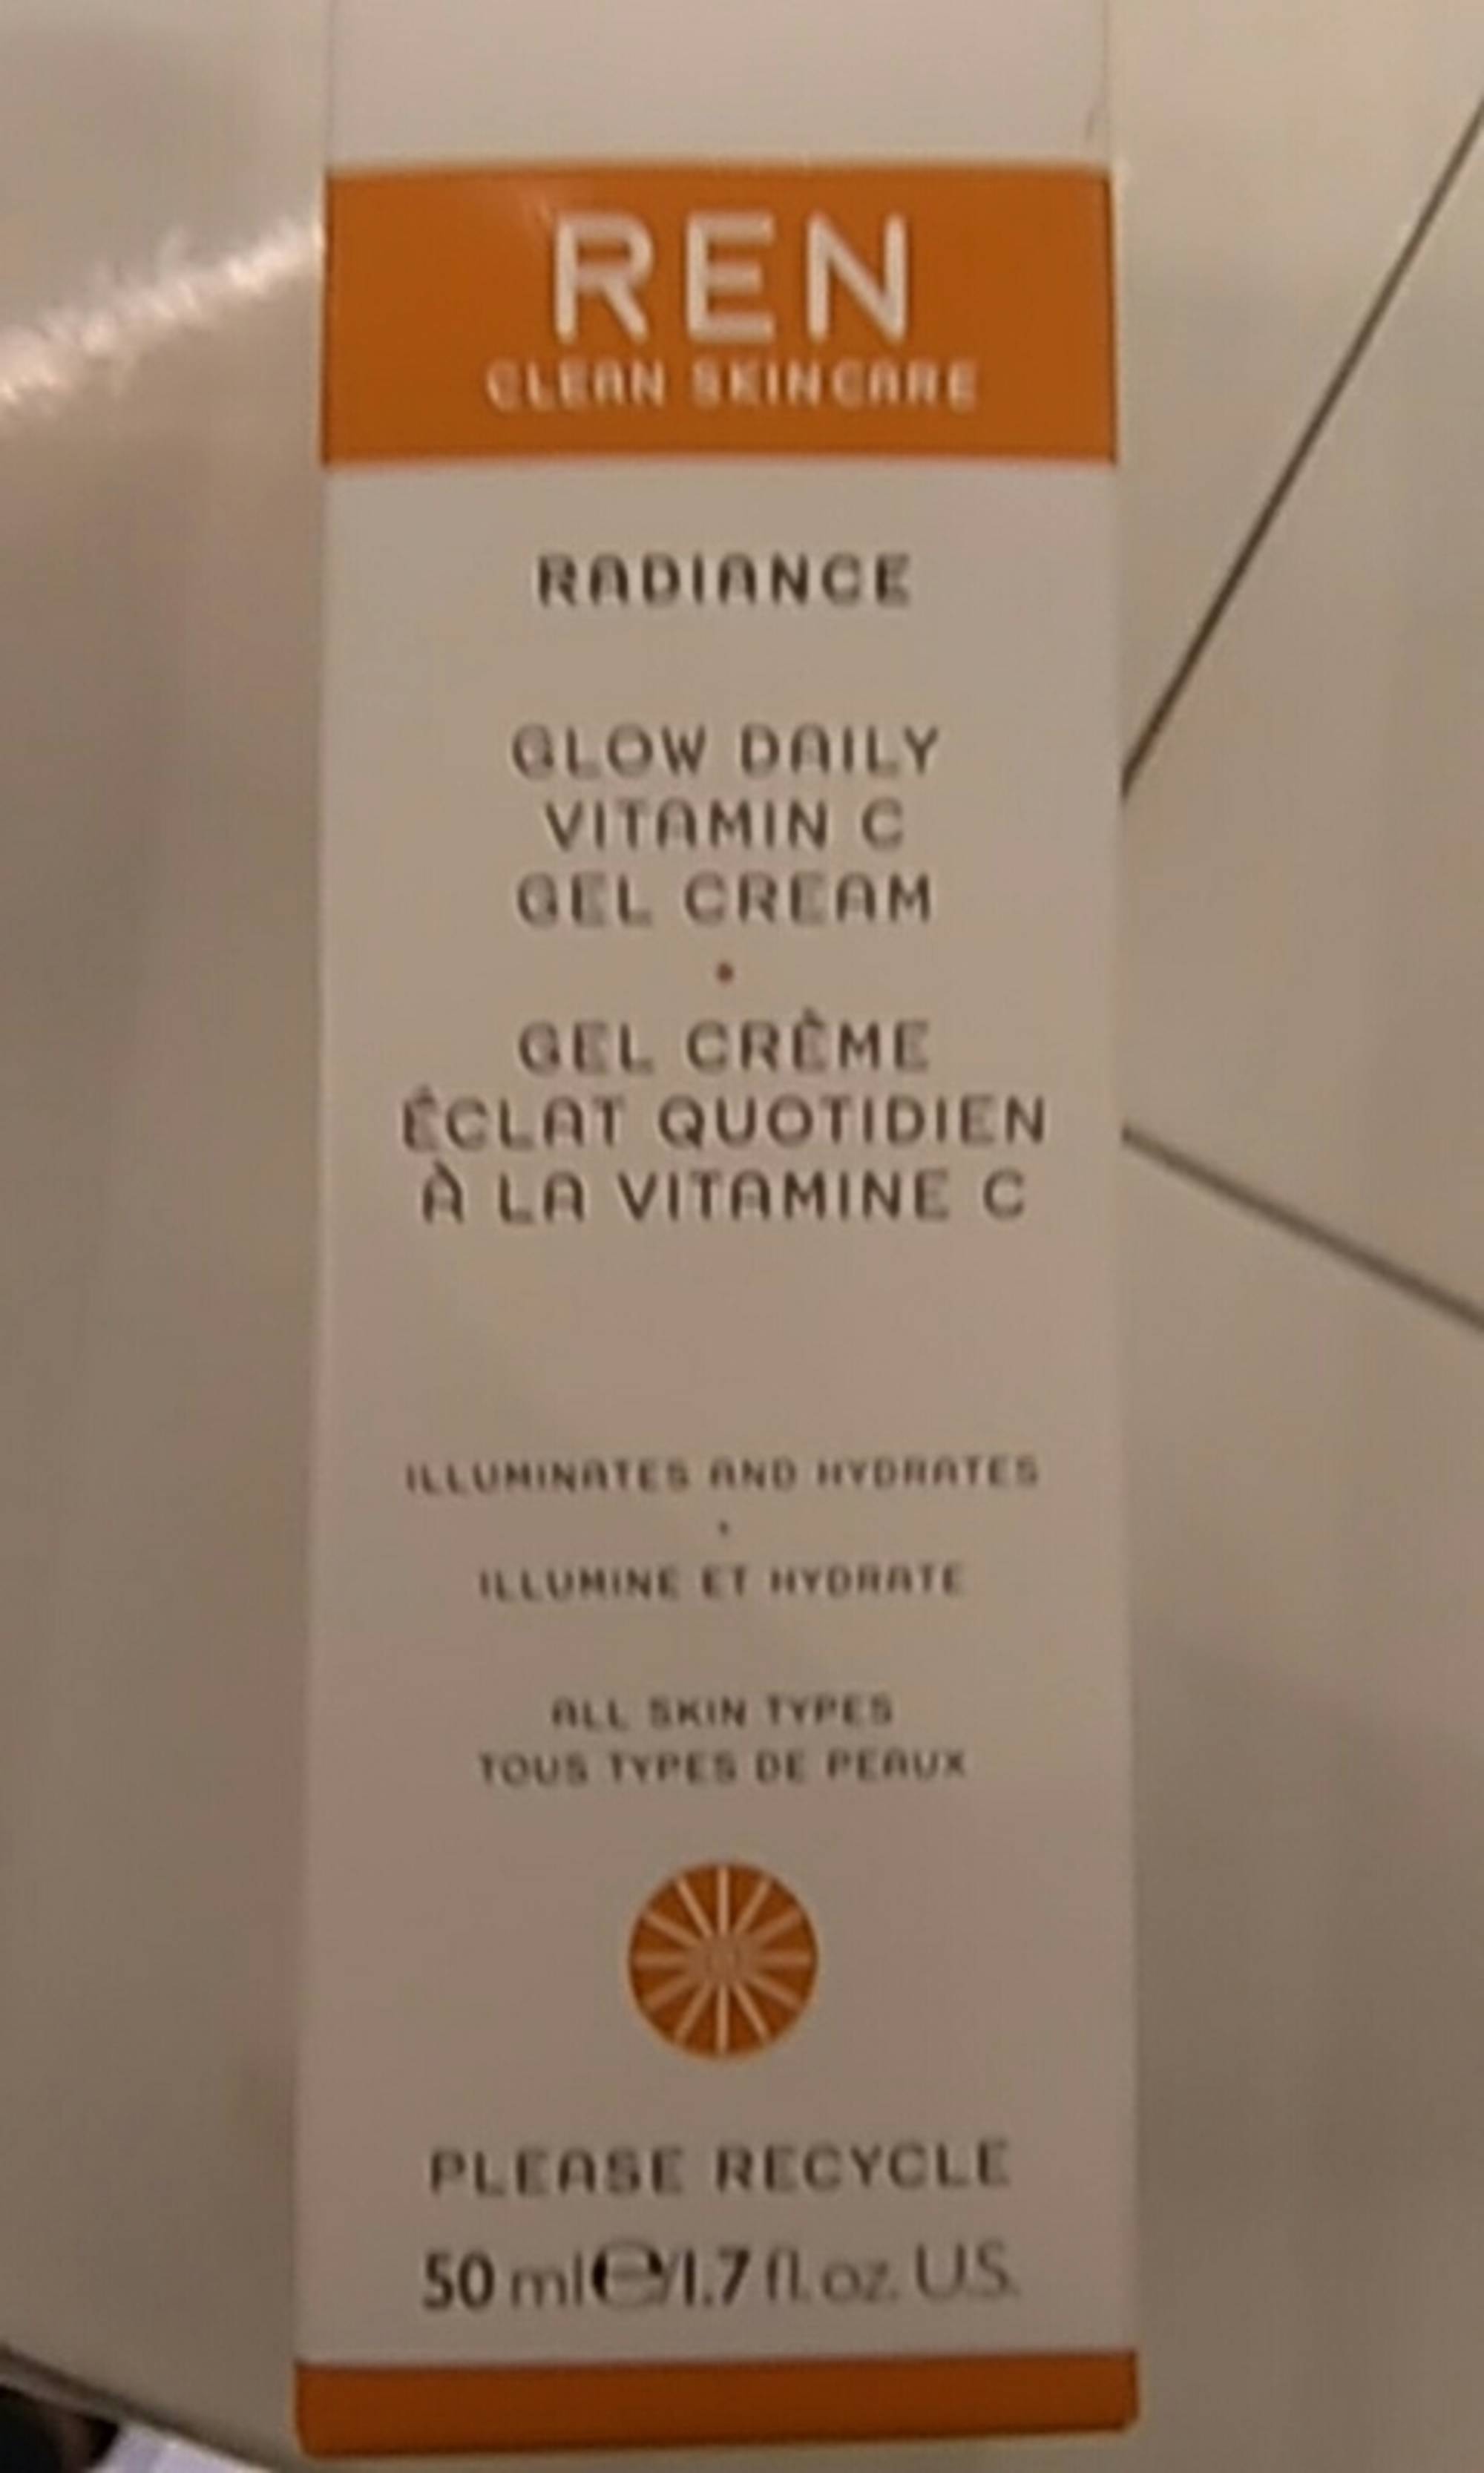 REN - Radiance - Gel crème éclat quotidien à la vitamine C